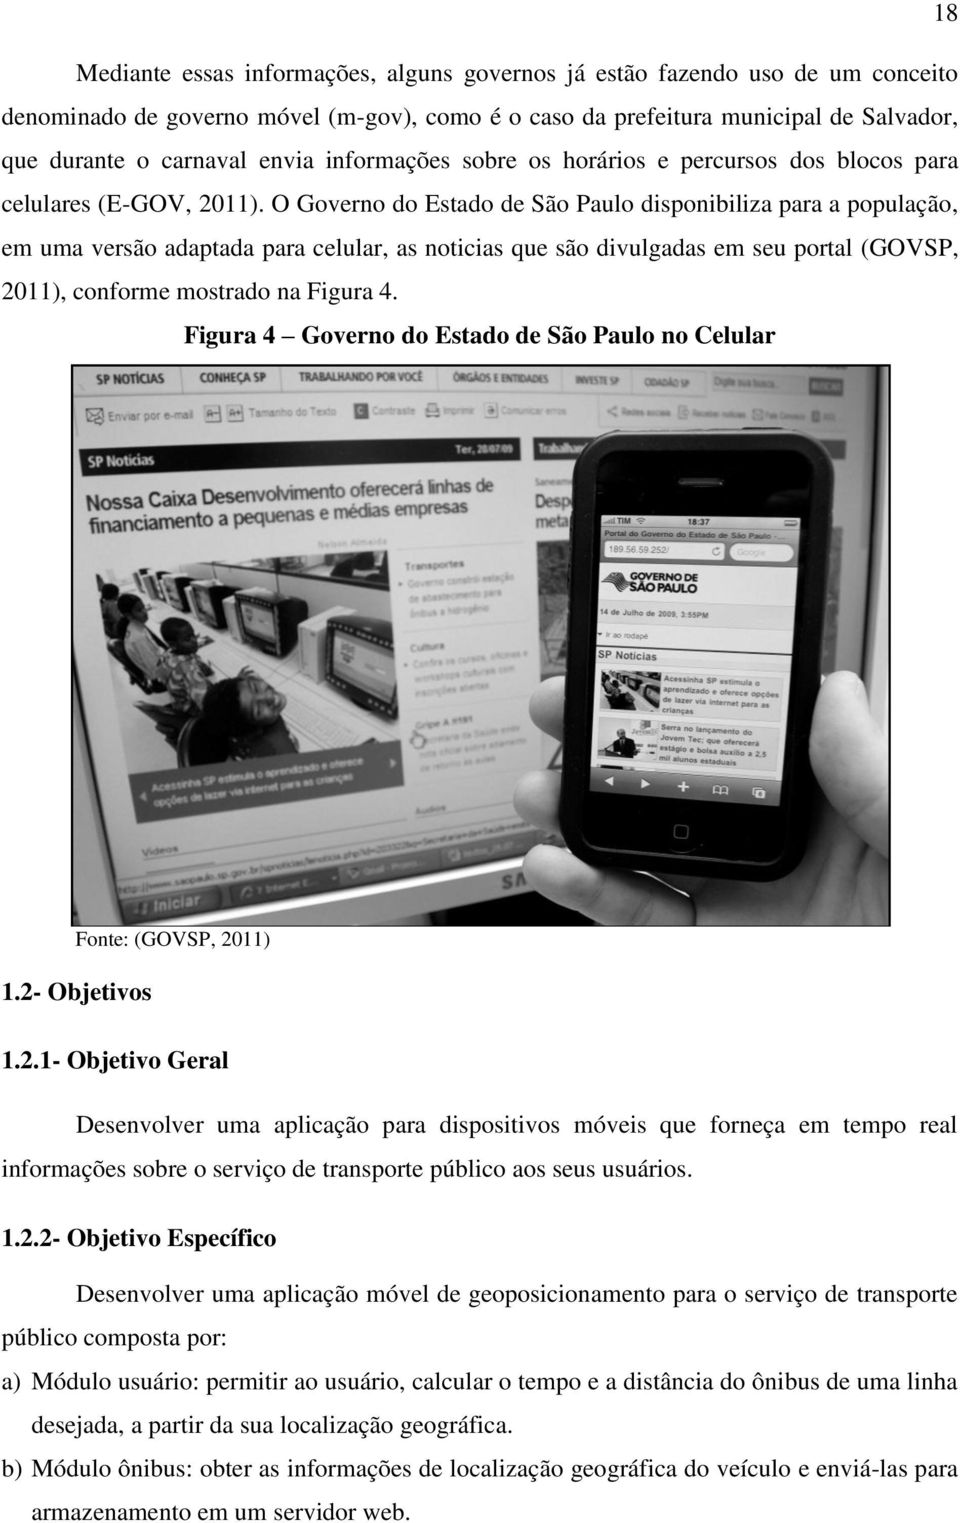 O Governo do Estado de São Paulo disponibiliza para a população, em uma versão adaptada para celular, as noticias que são divulgadas em seu portal (GOVSP, 2011), conforme mostrado na Figura 4.